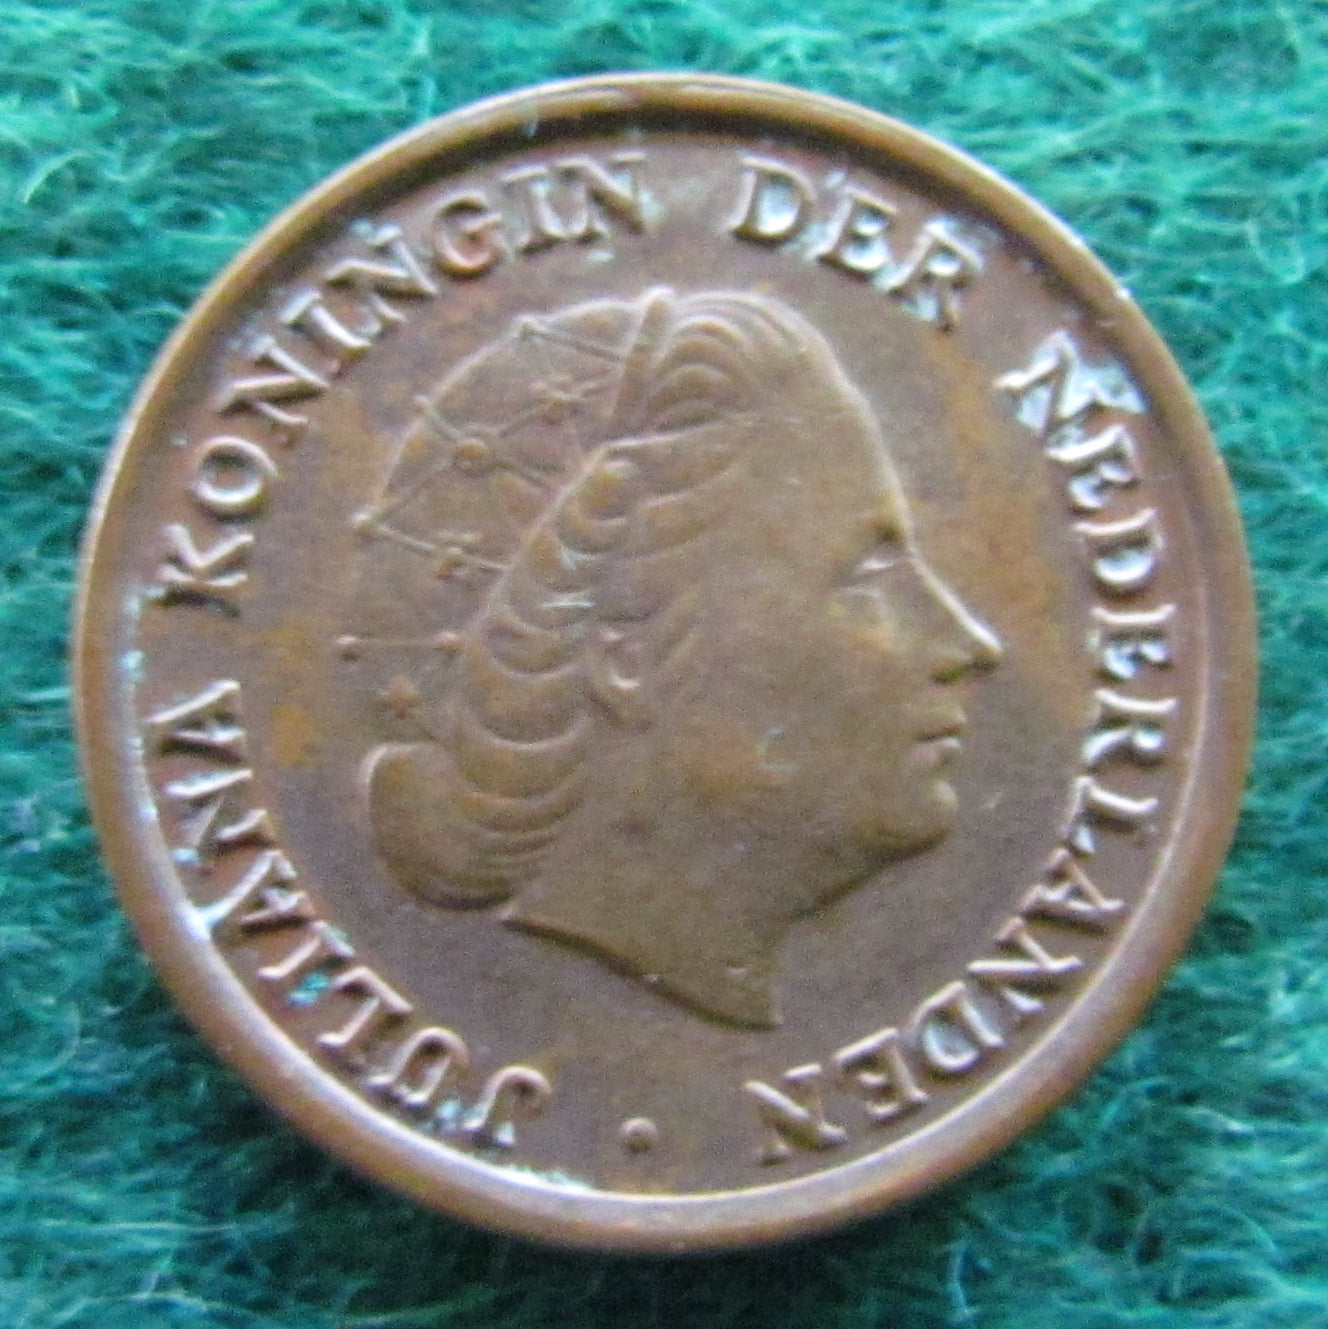 Netherlands 1963 1 Cent Juliana Coin